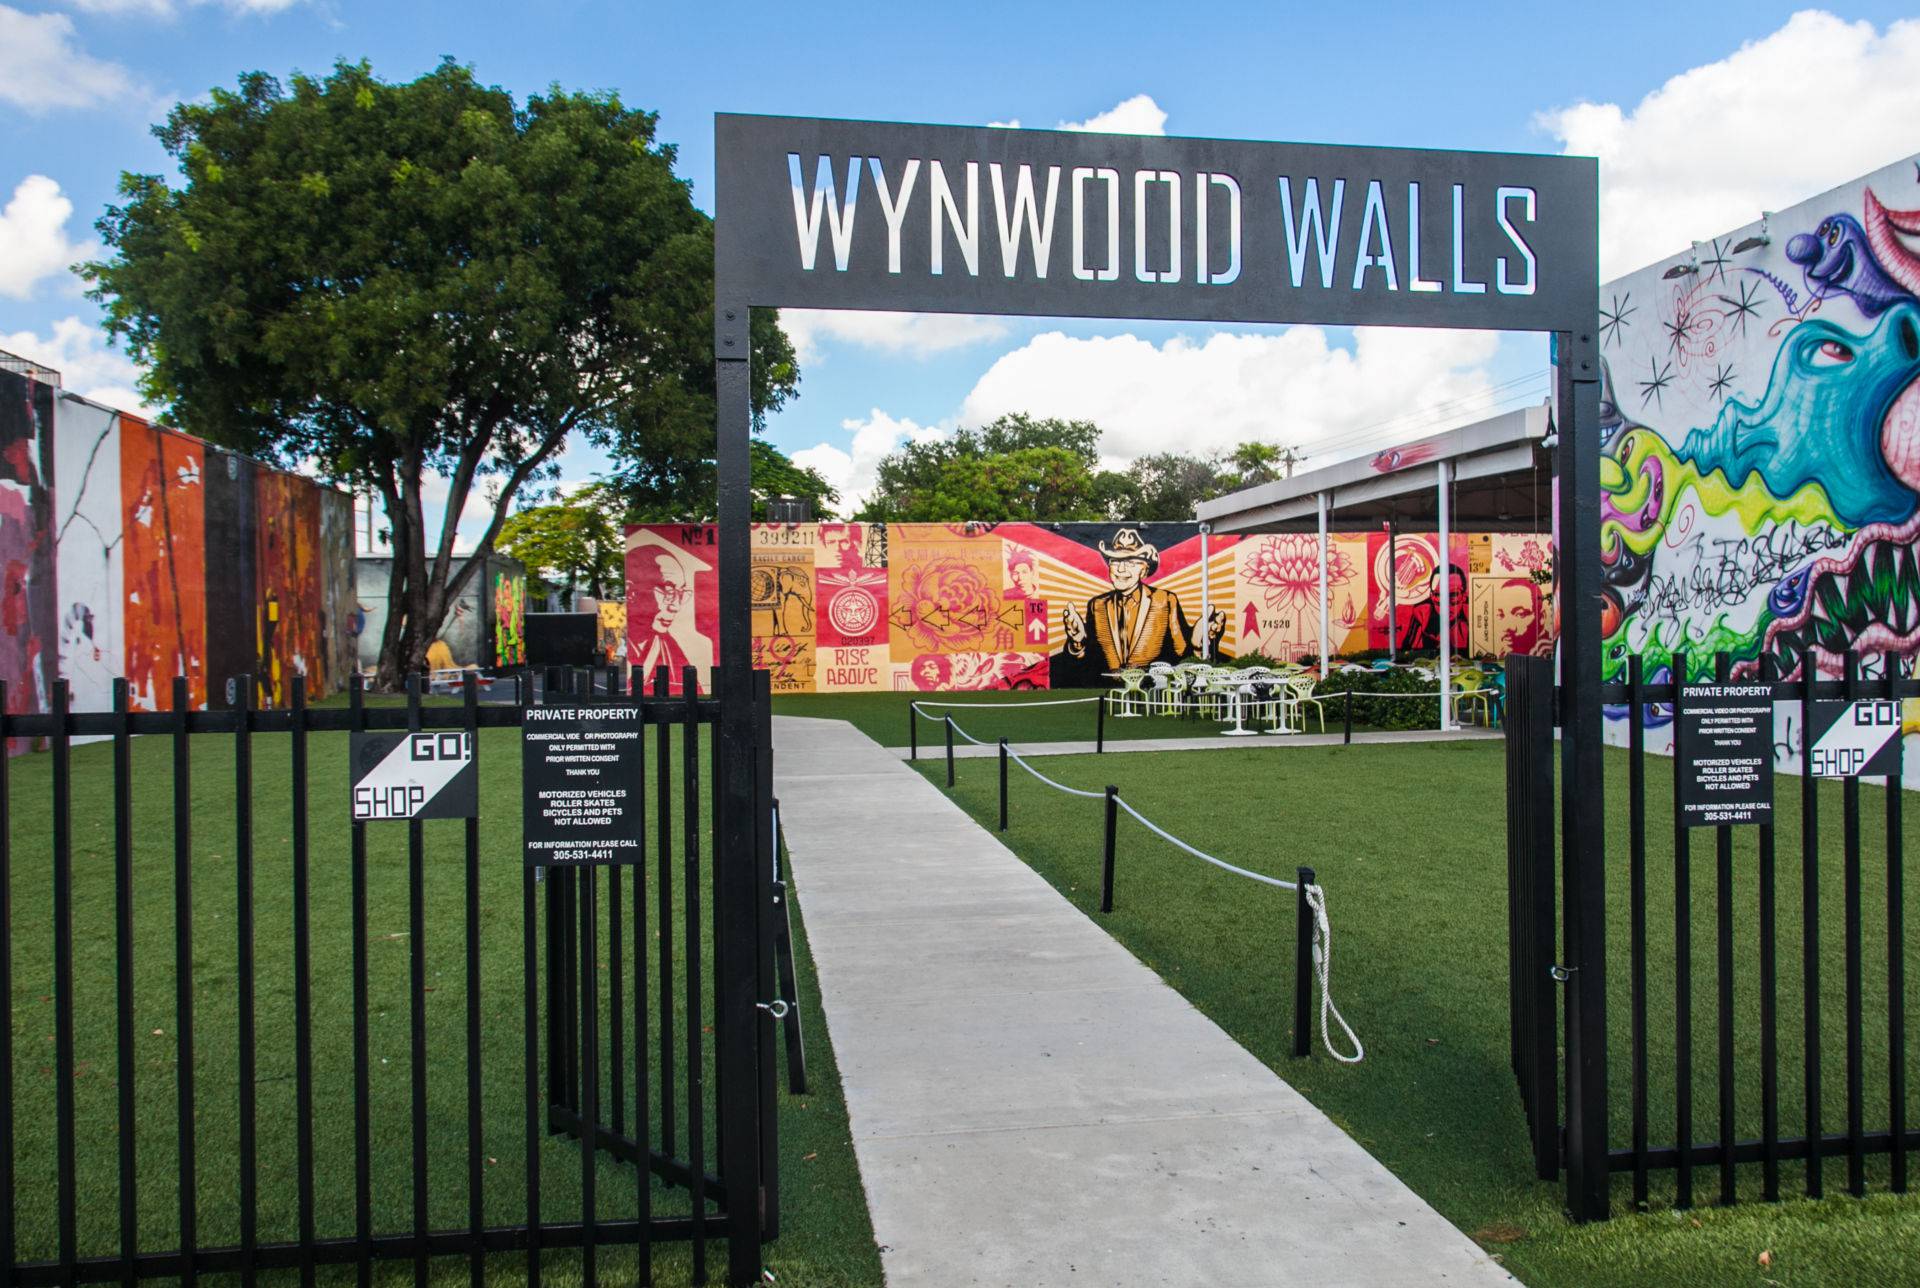 Visiter Wynwood : le guide complet